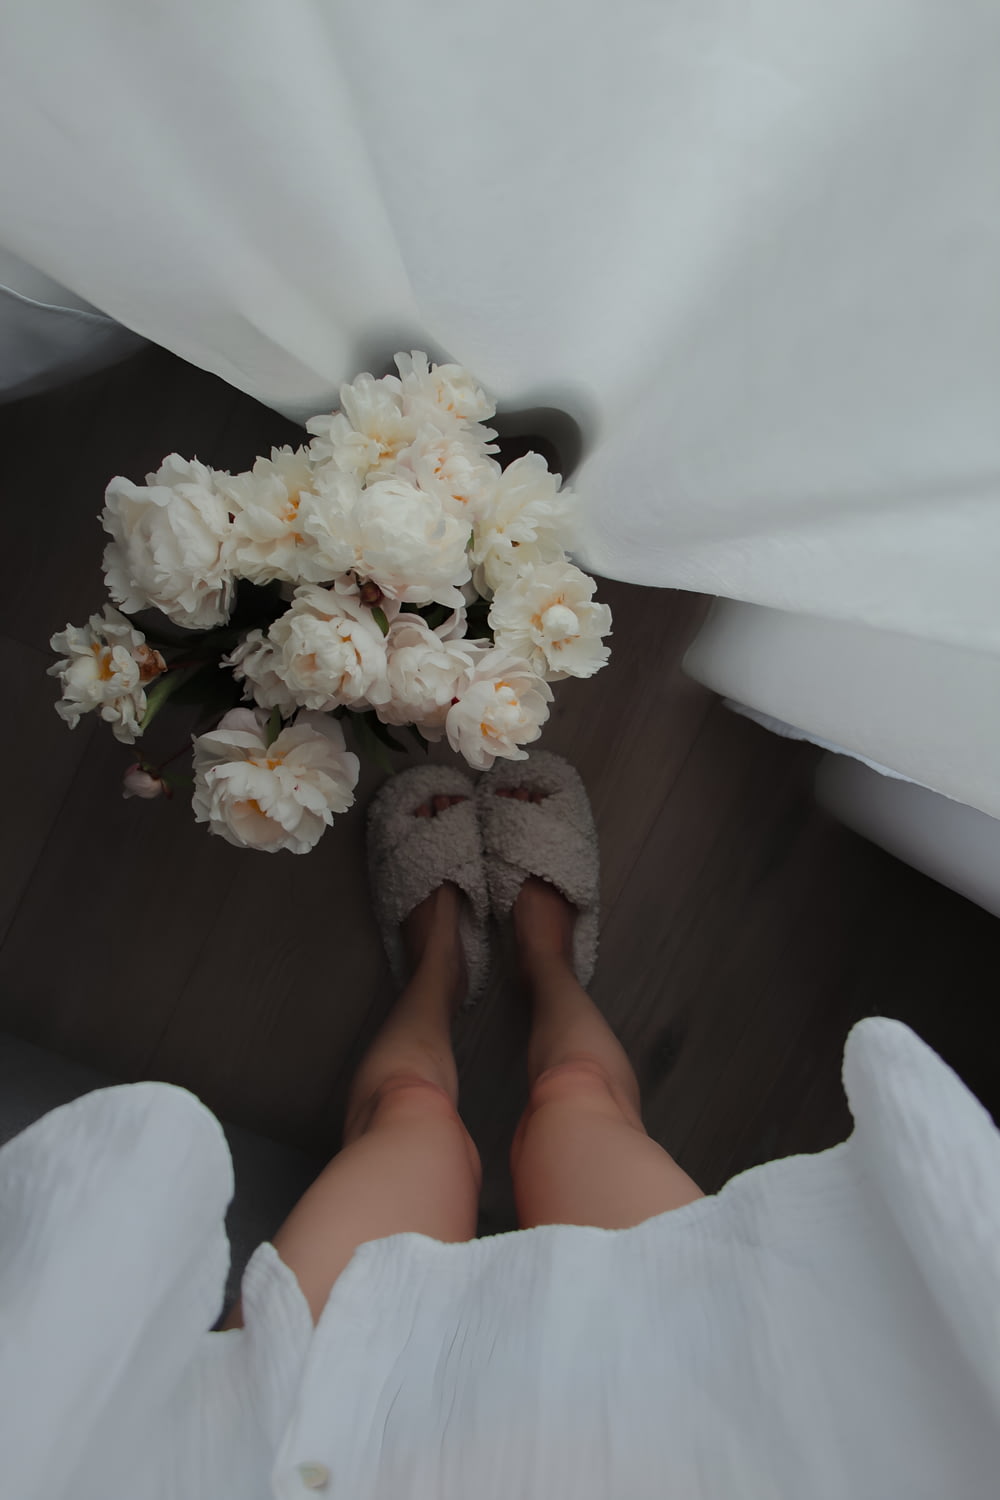 사람의 발 위에 앉아 있는 흰 꽃다발